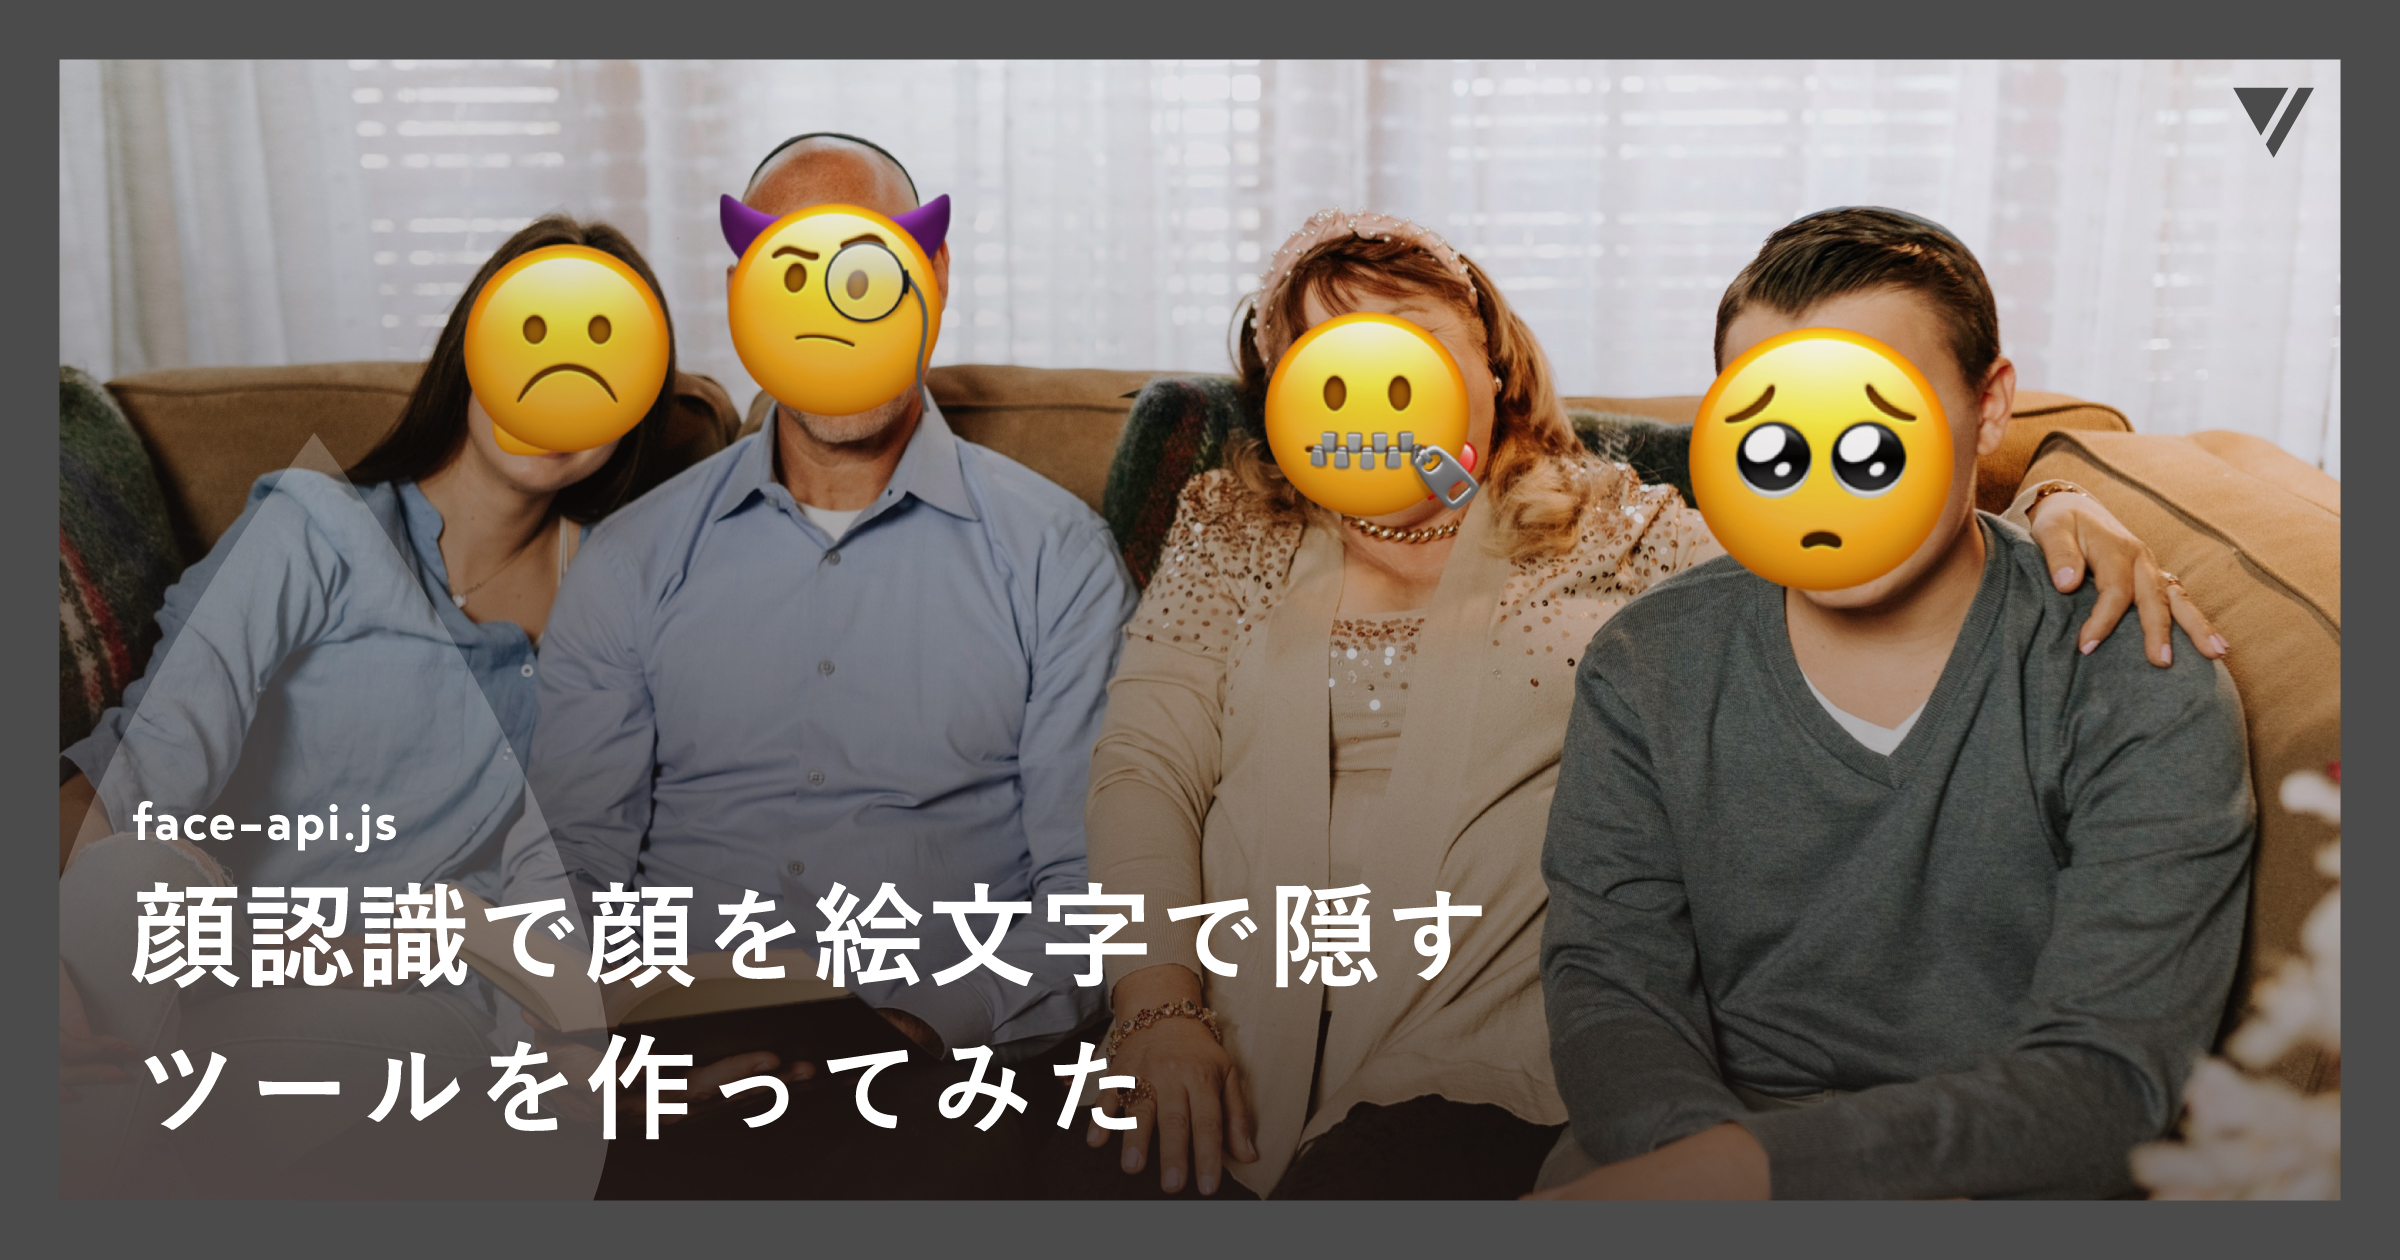 「顔認識(face-api.js)で顔を絵文字で隠すツールを作ってみた」のアイキャッチ画像